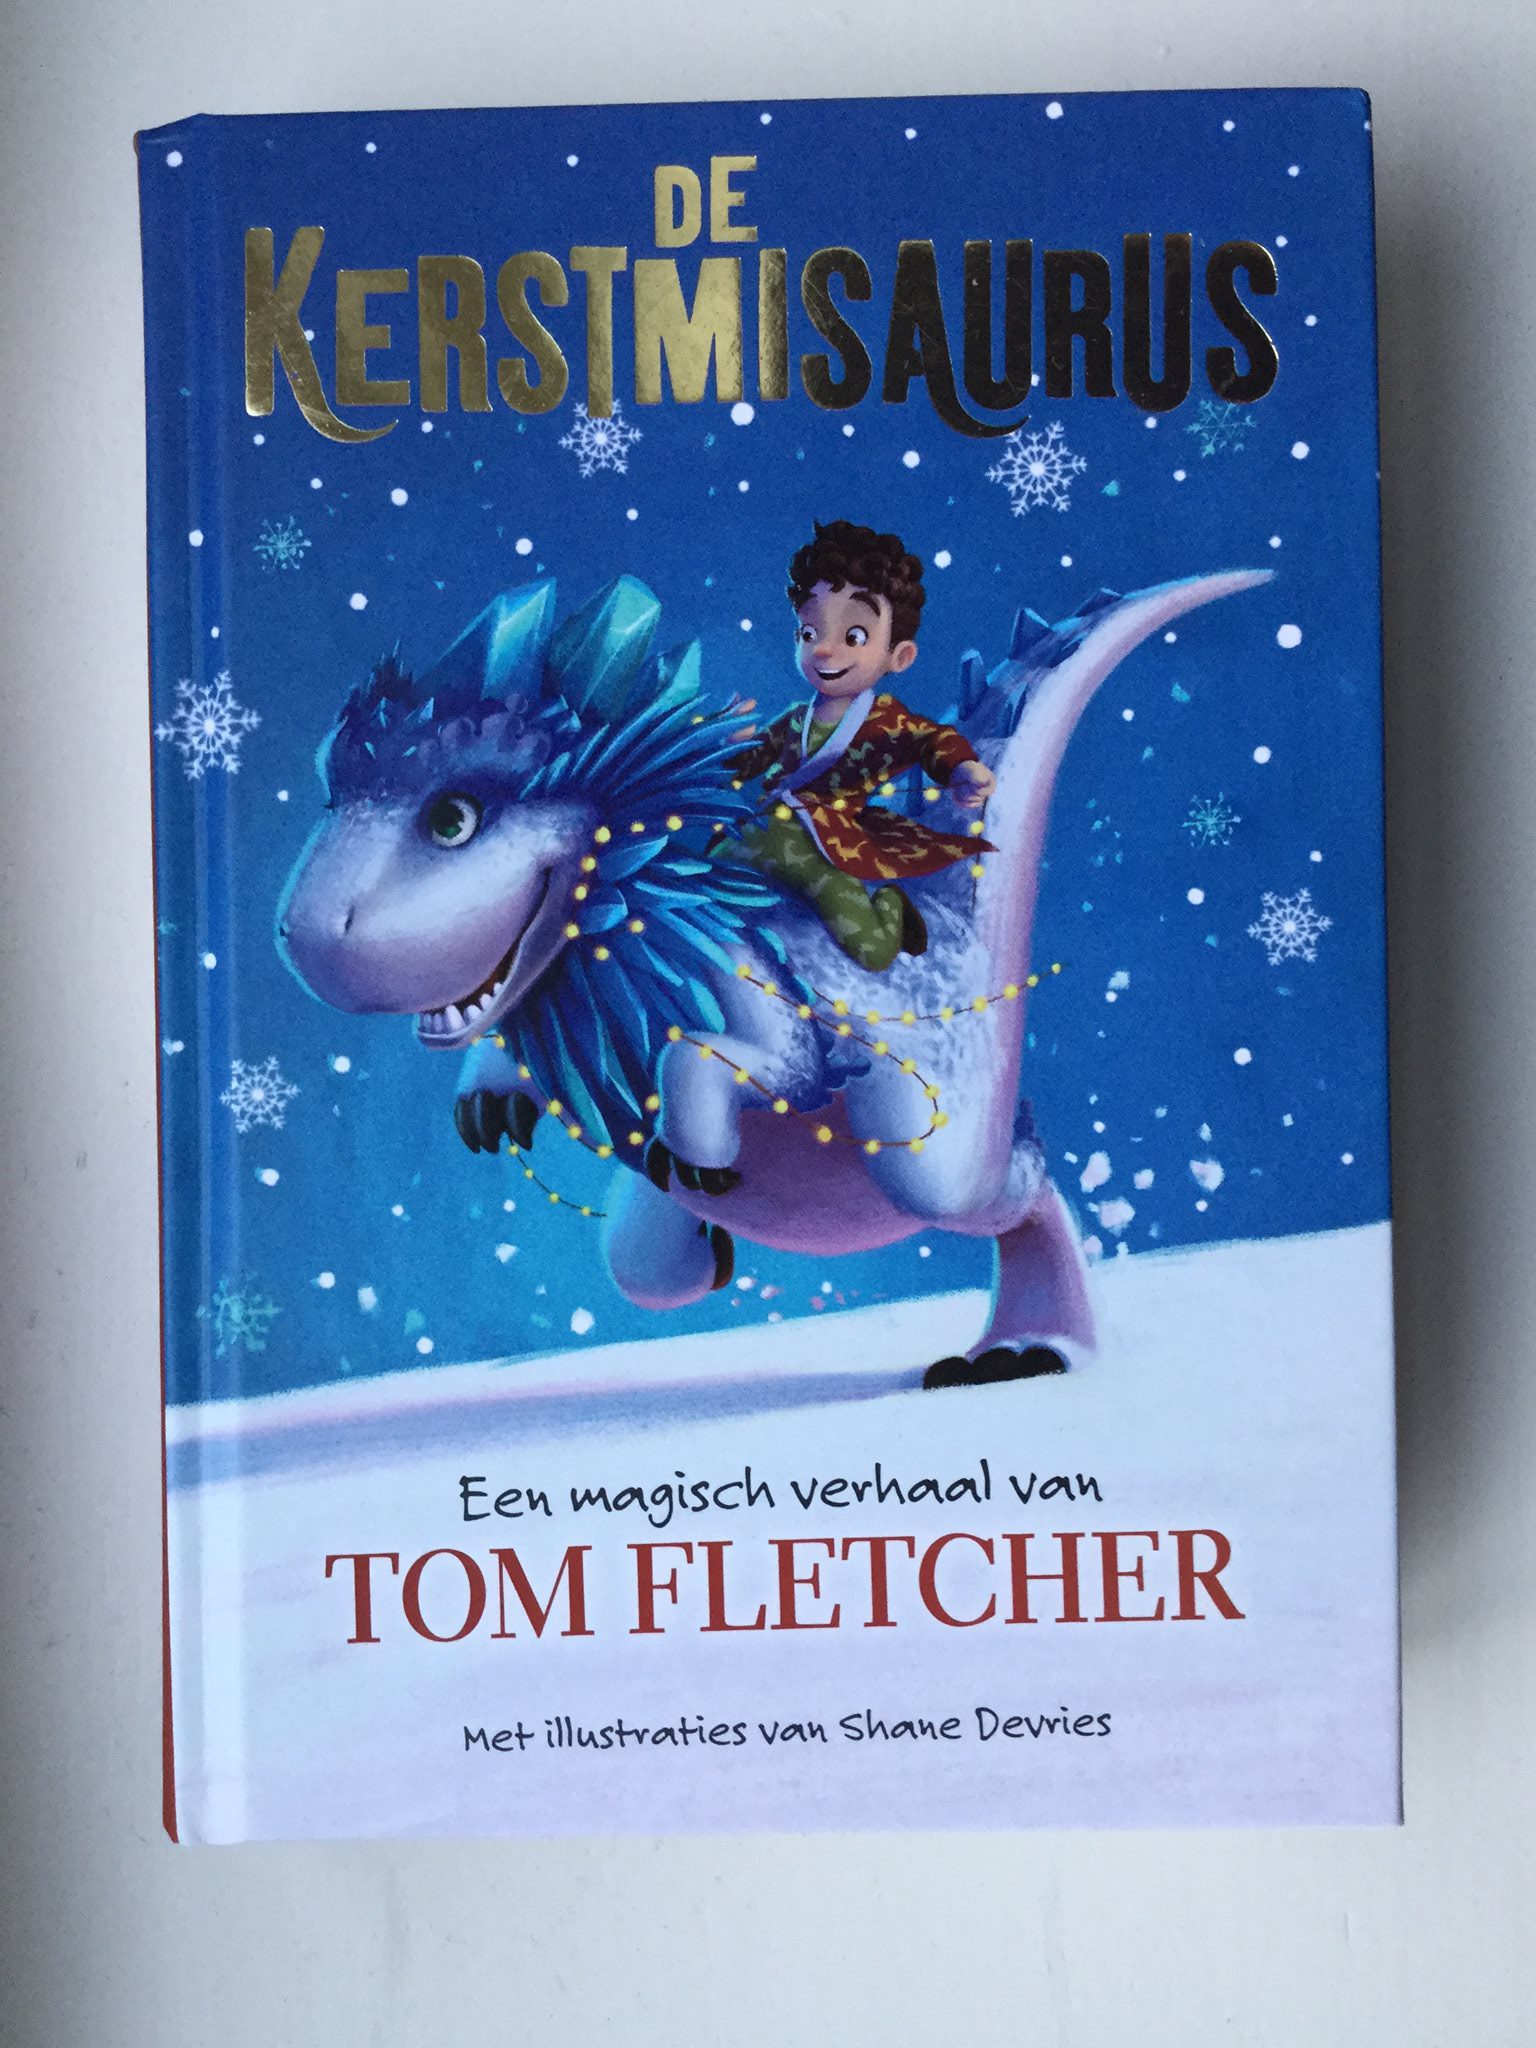 De Kerstmisaurus, het kerstboek van het jaar